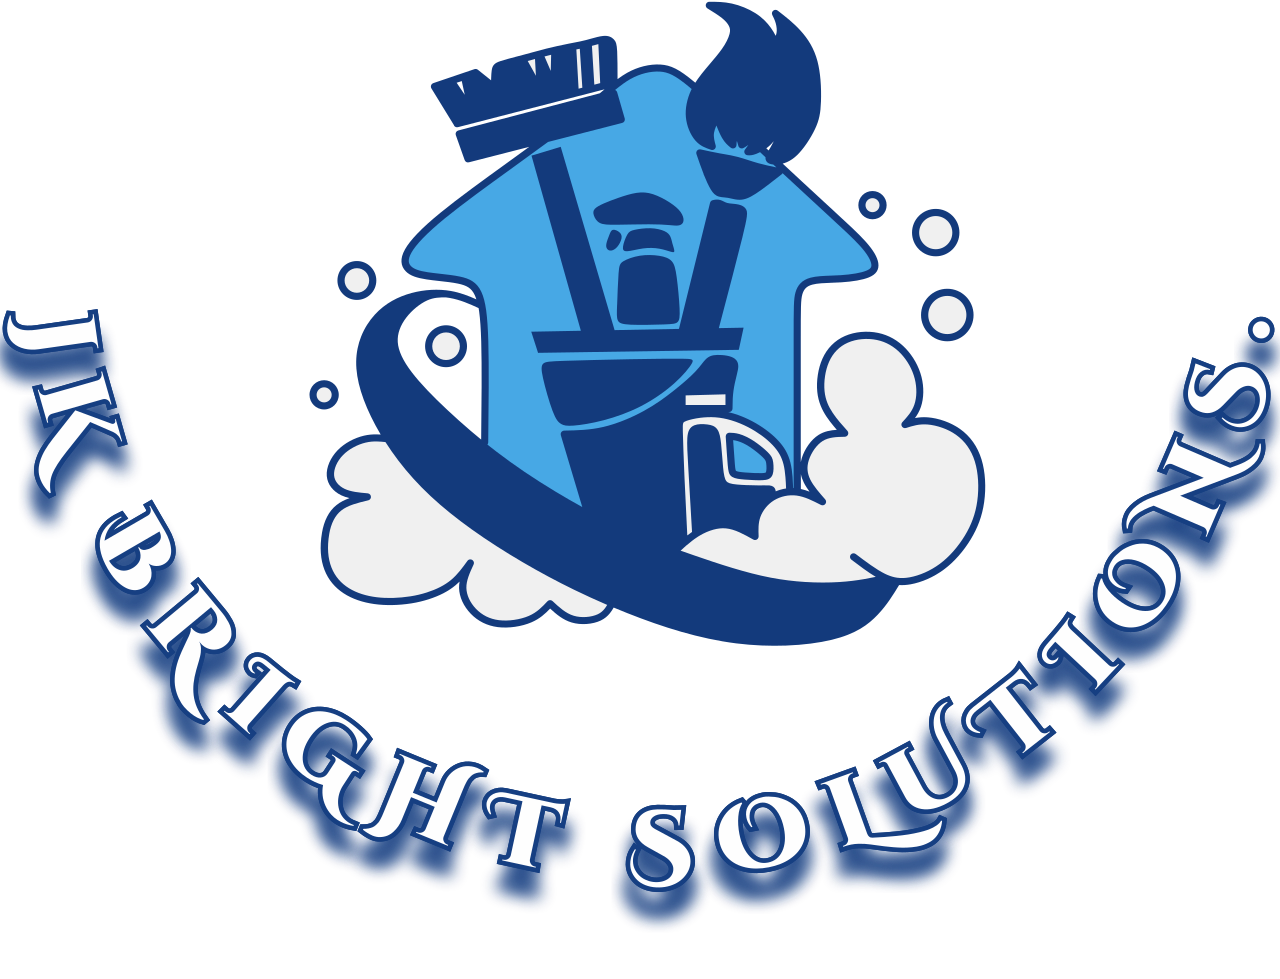 Jk bright solutions.'s logo